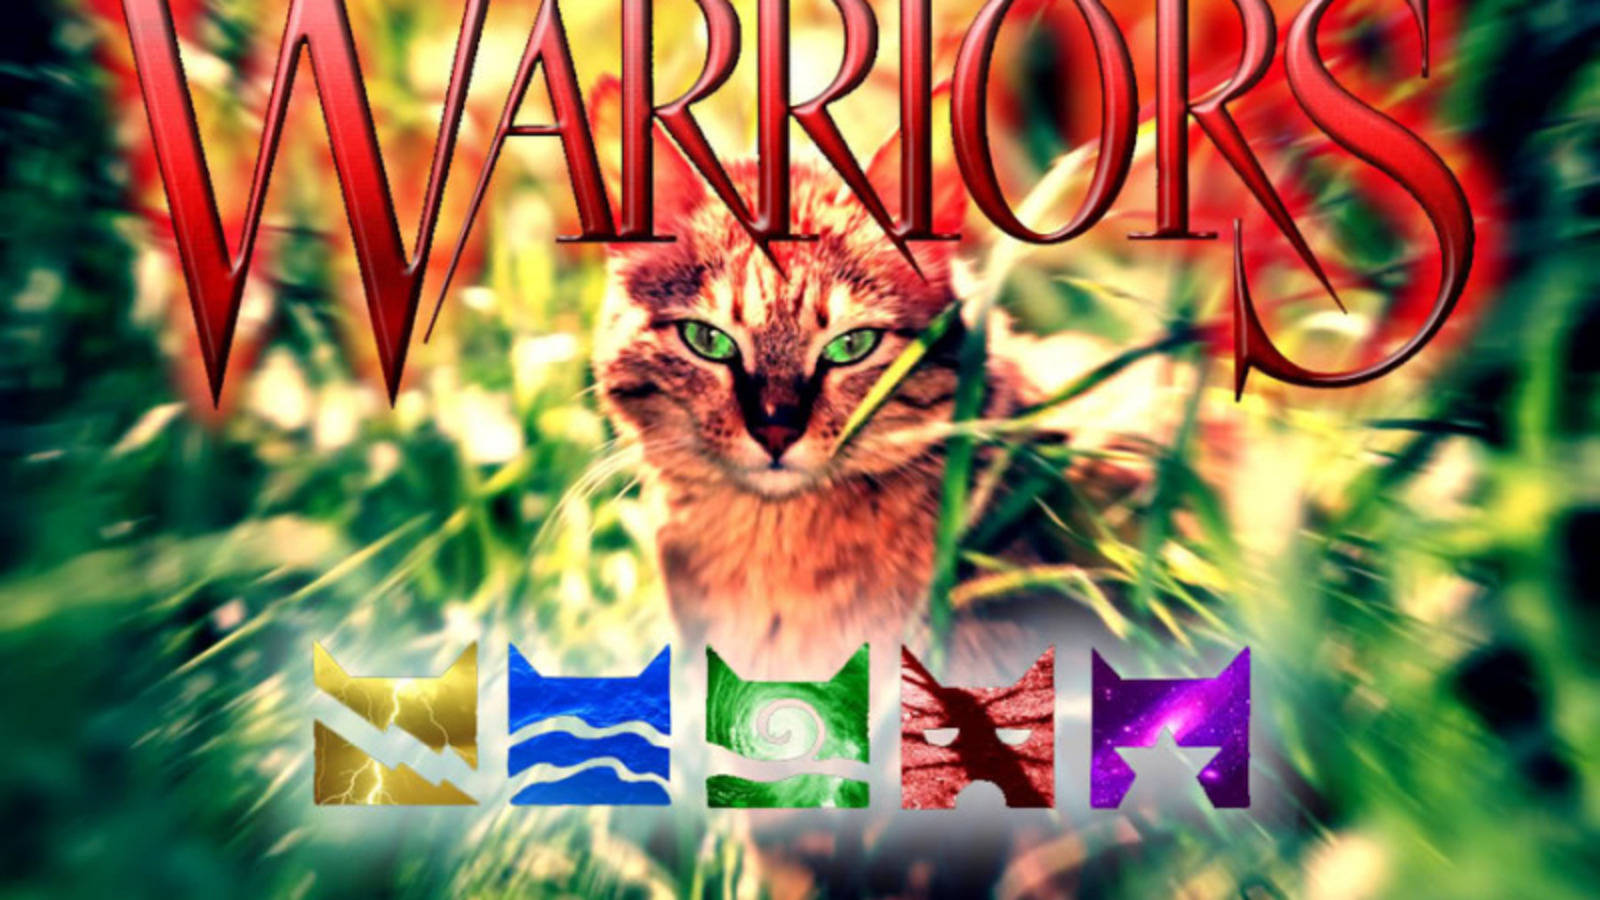 100+] Warrior Cats Wallpapers